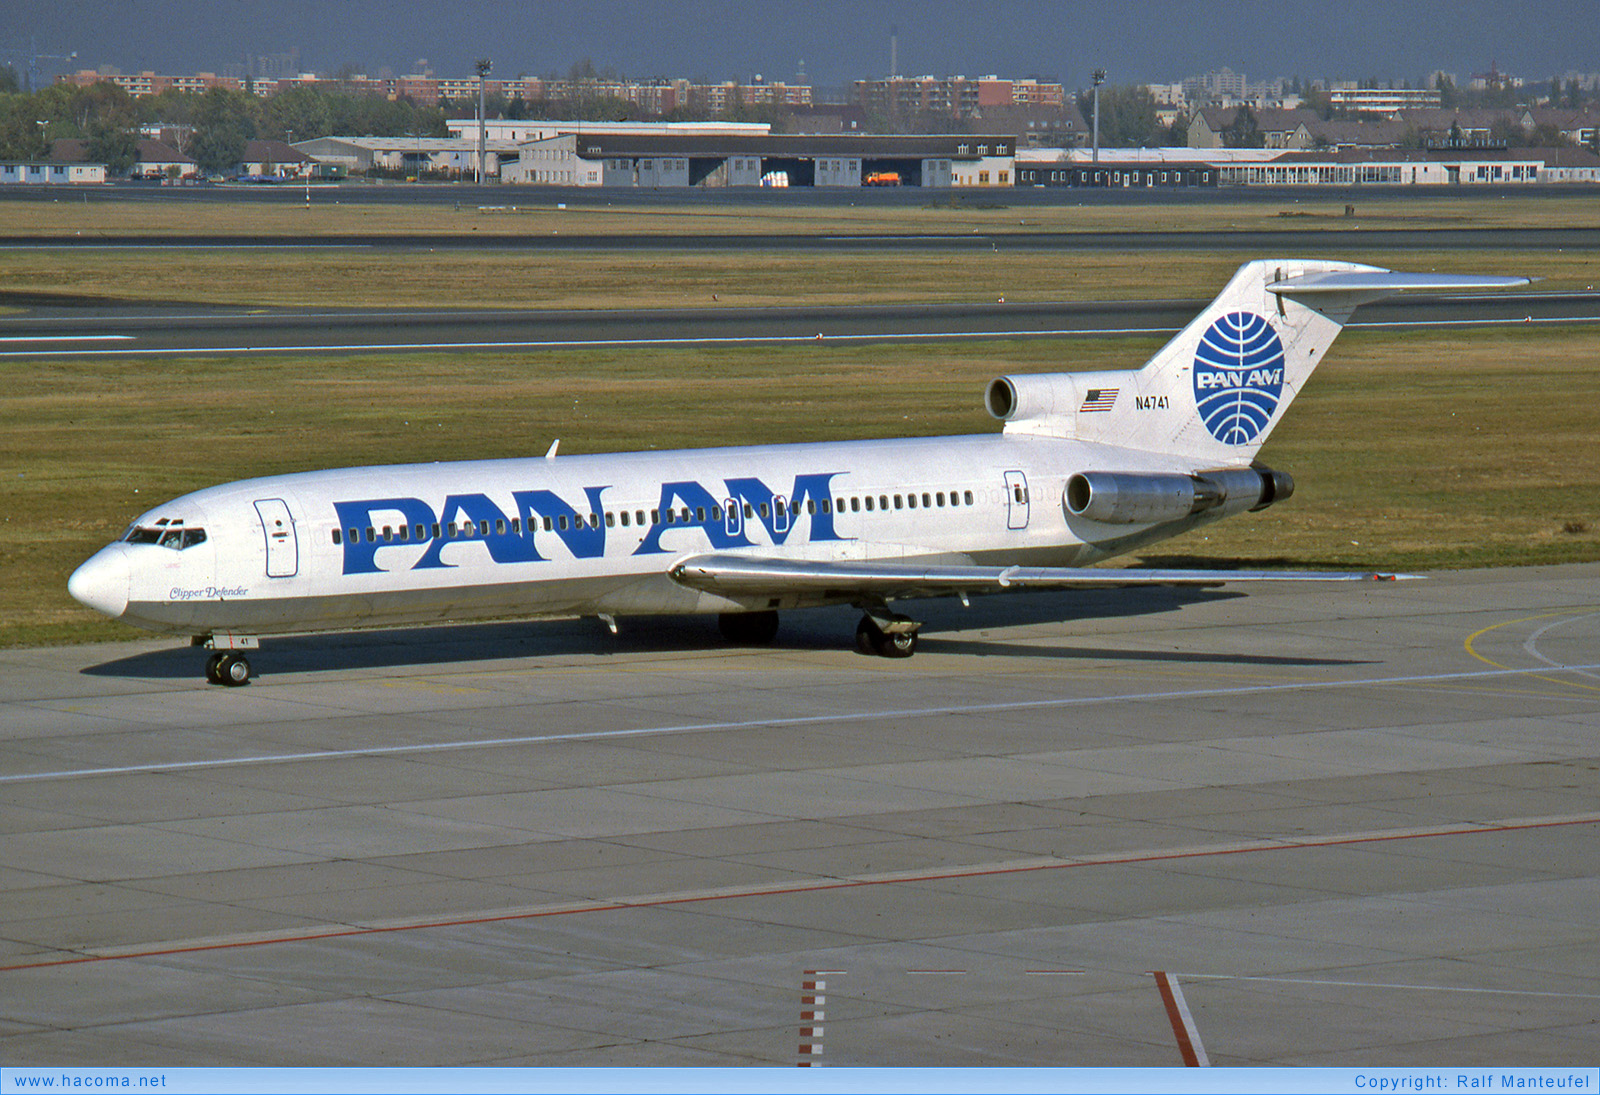 Foto von N4741 - Pan Am Clipper Defender - Flughafen Berlin-Tegel - 24.10.1990